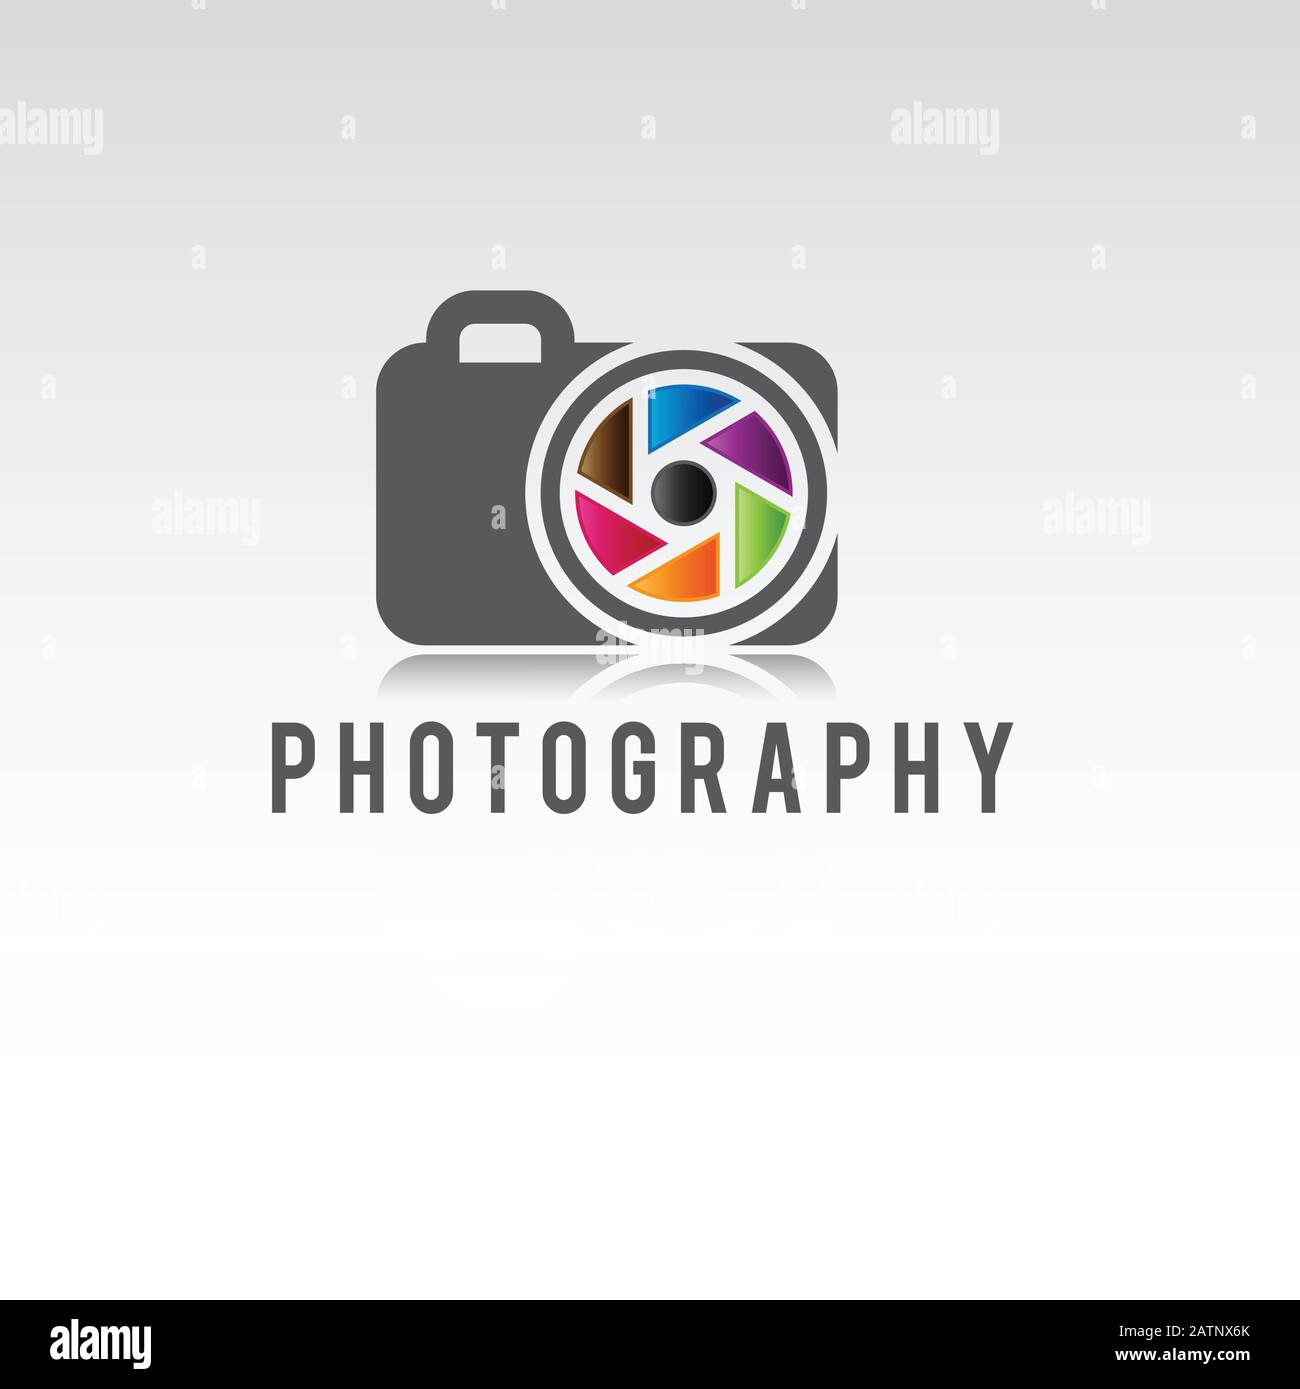 Logo Della Fotocamera E Concetto Di Fotografia Design In Sfondo Bianco. Modello Di Logo Del Fotografo, Logo Fotografico, Fotocamera Fotografica Illustrazione Vettoriale